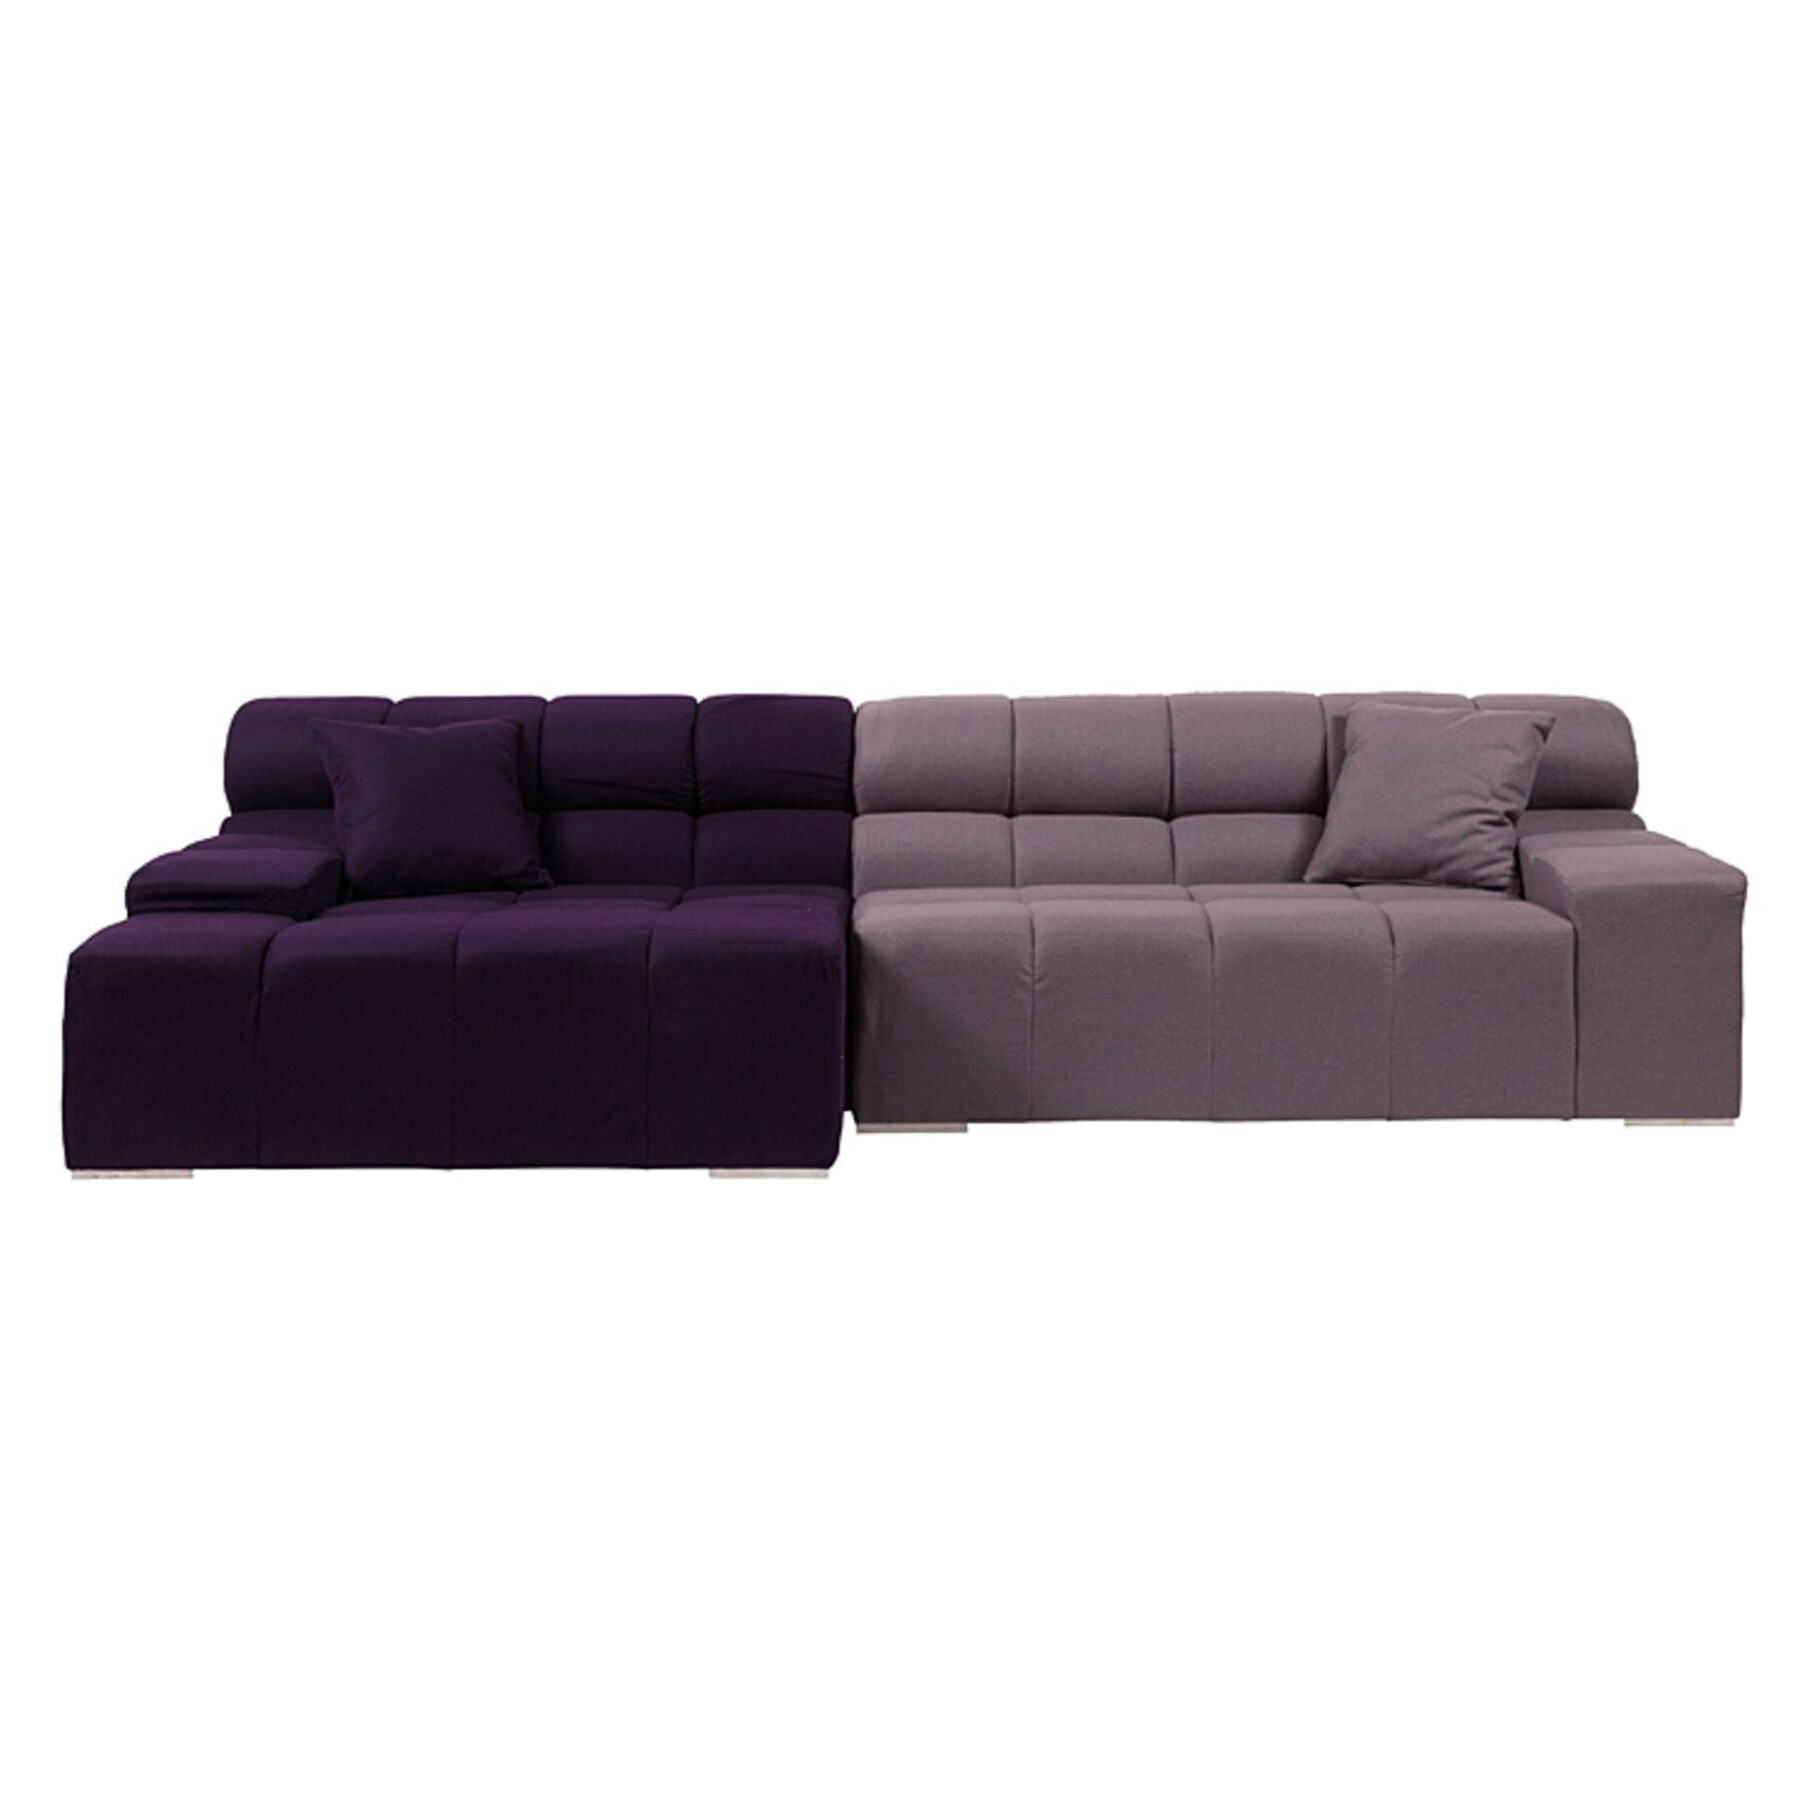 Диван Tufty-Time Sofa угловой модульный фиолетовый с серым